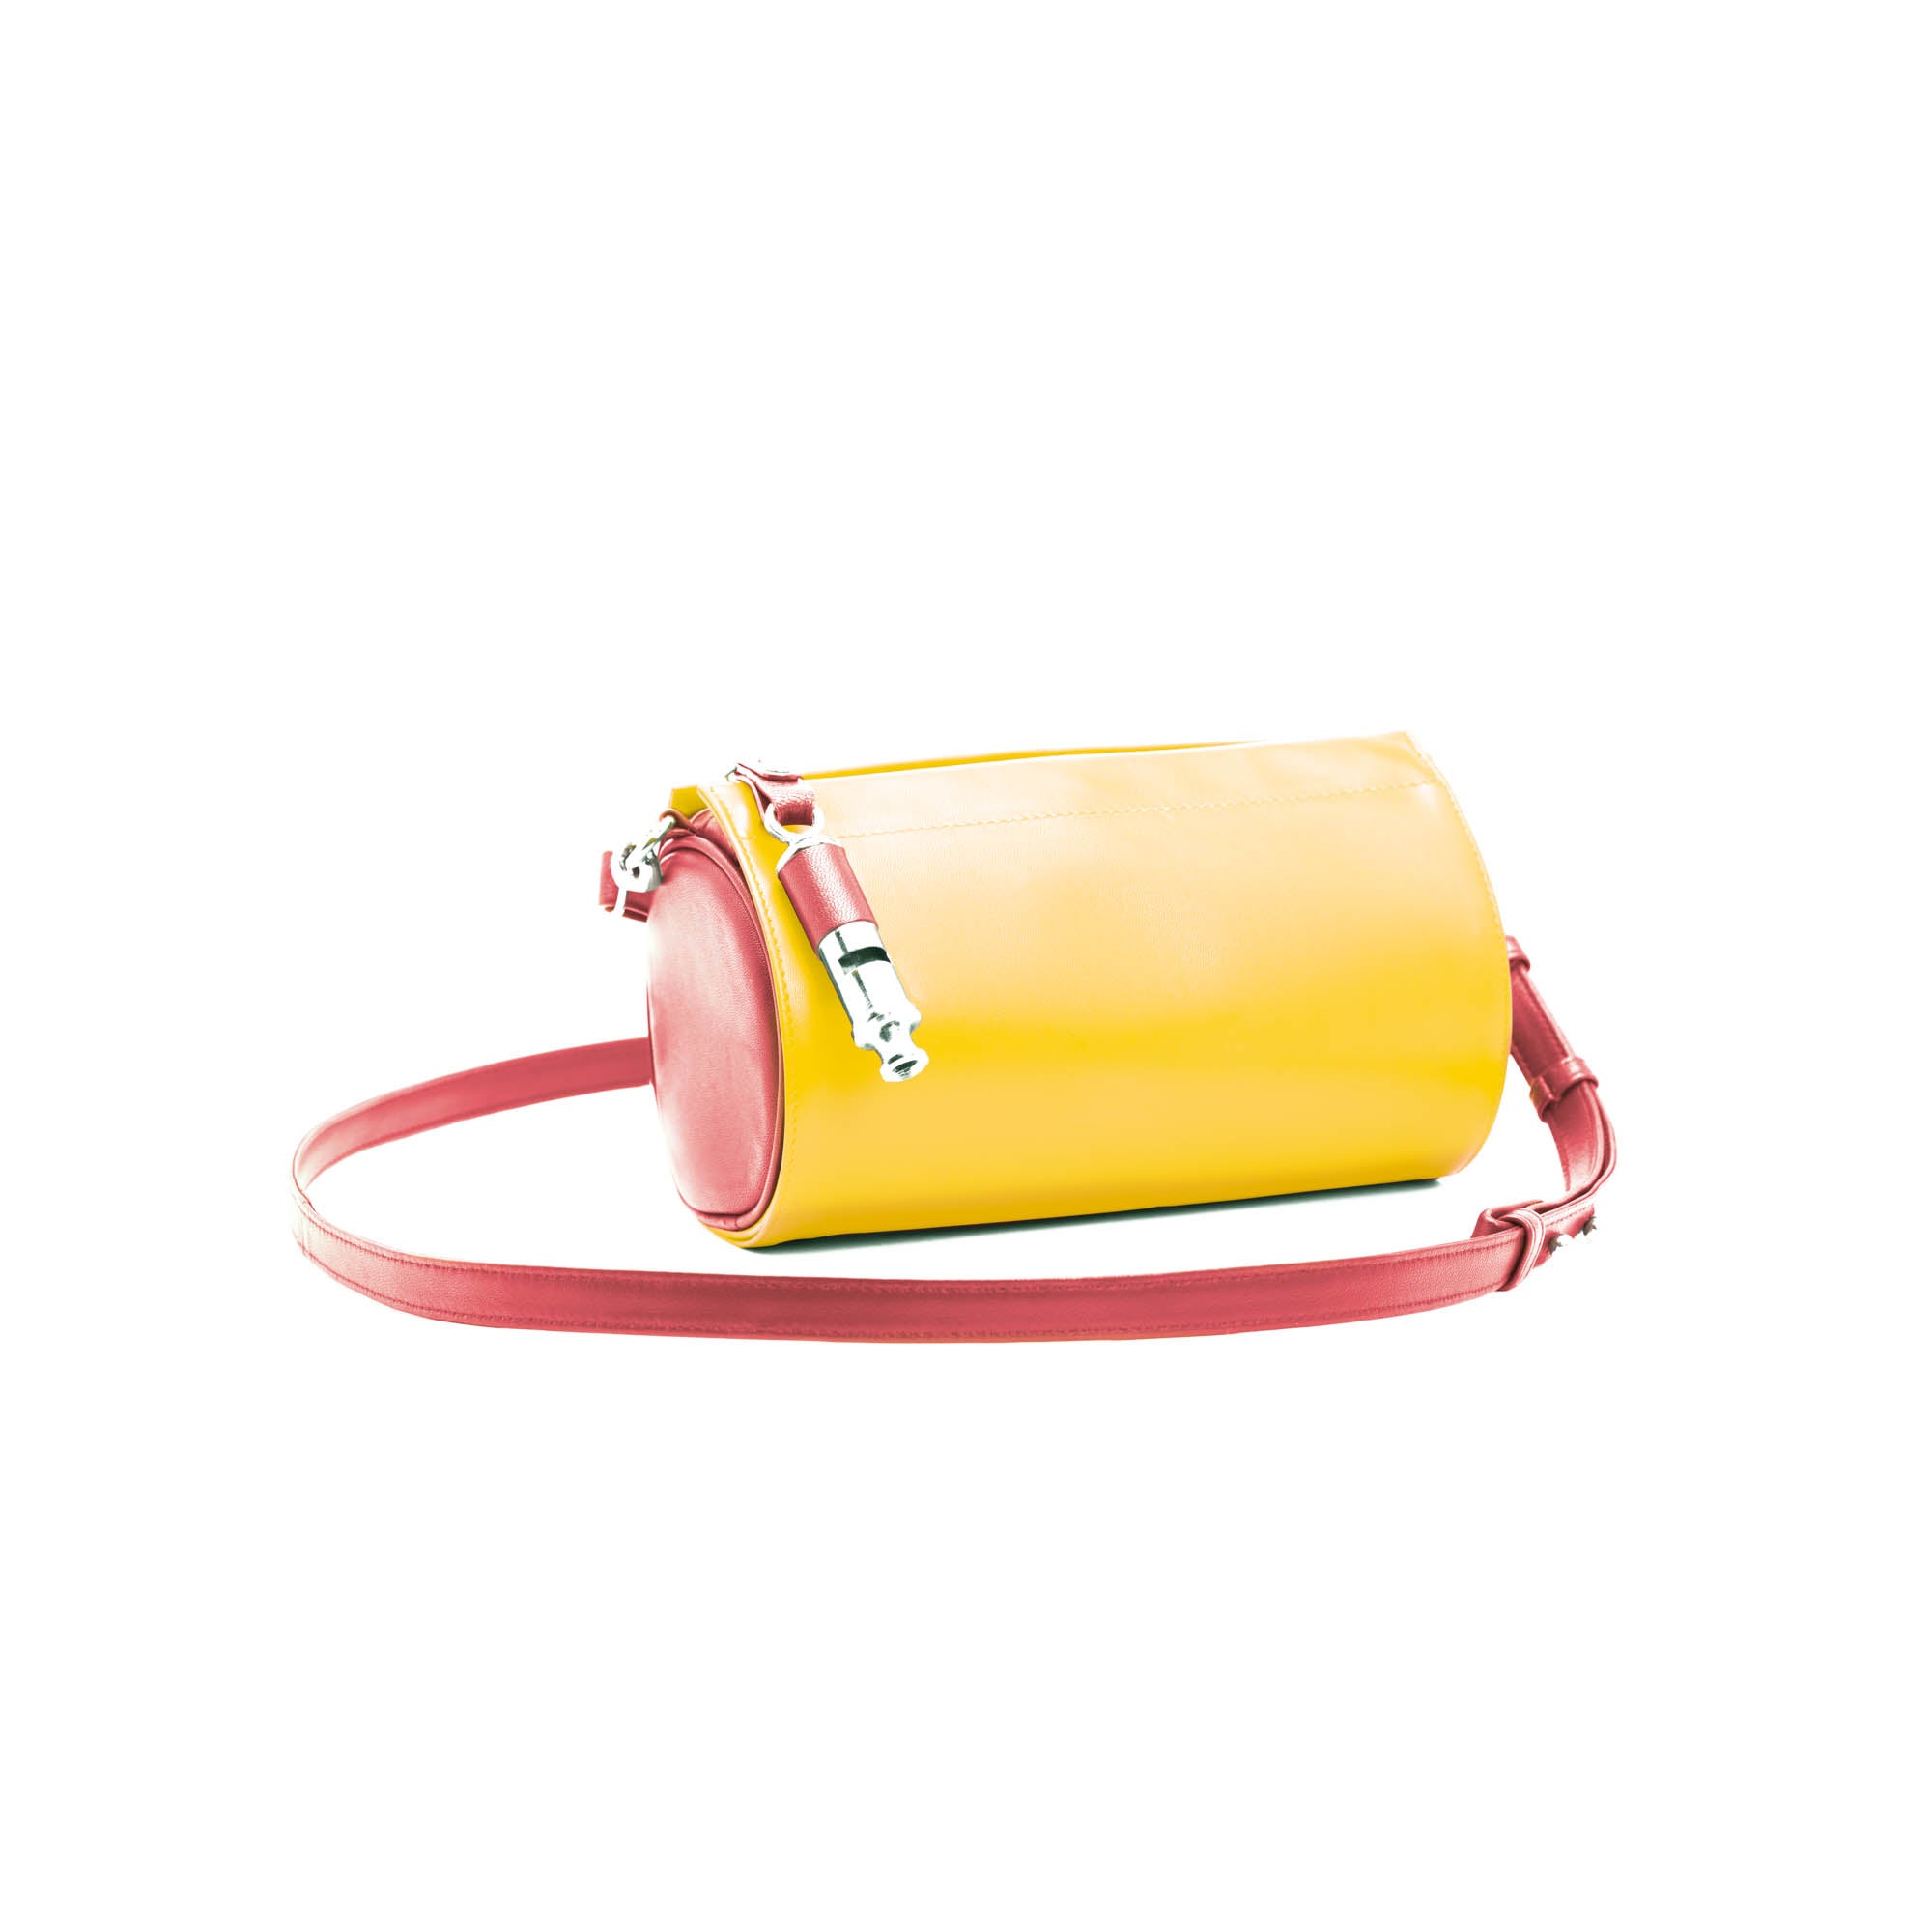 Gamechanger Barrel Solid Red Lambskin 5-In-1 Convertible Handbag